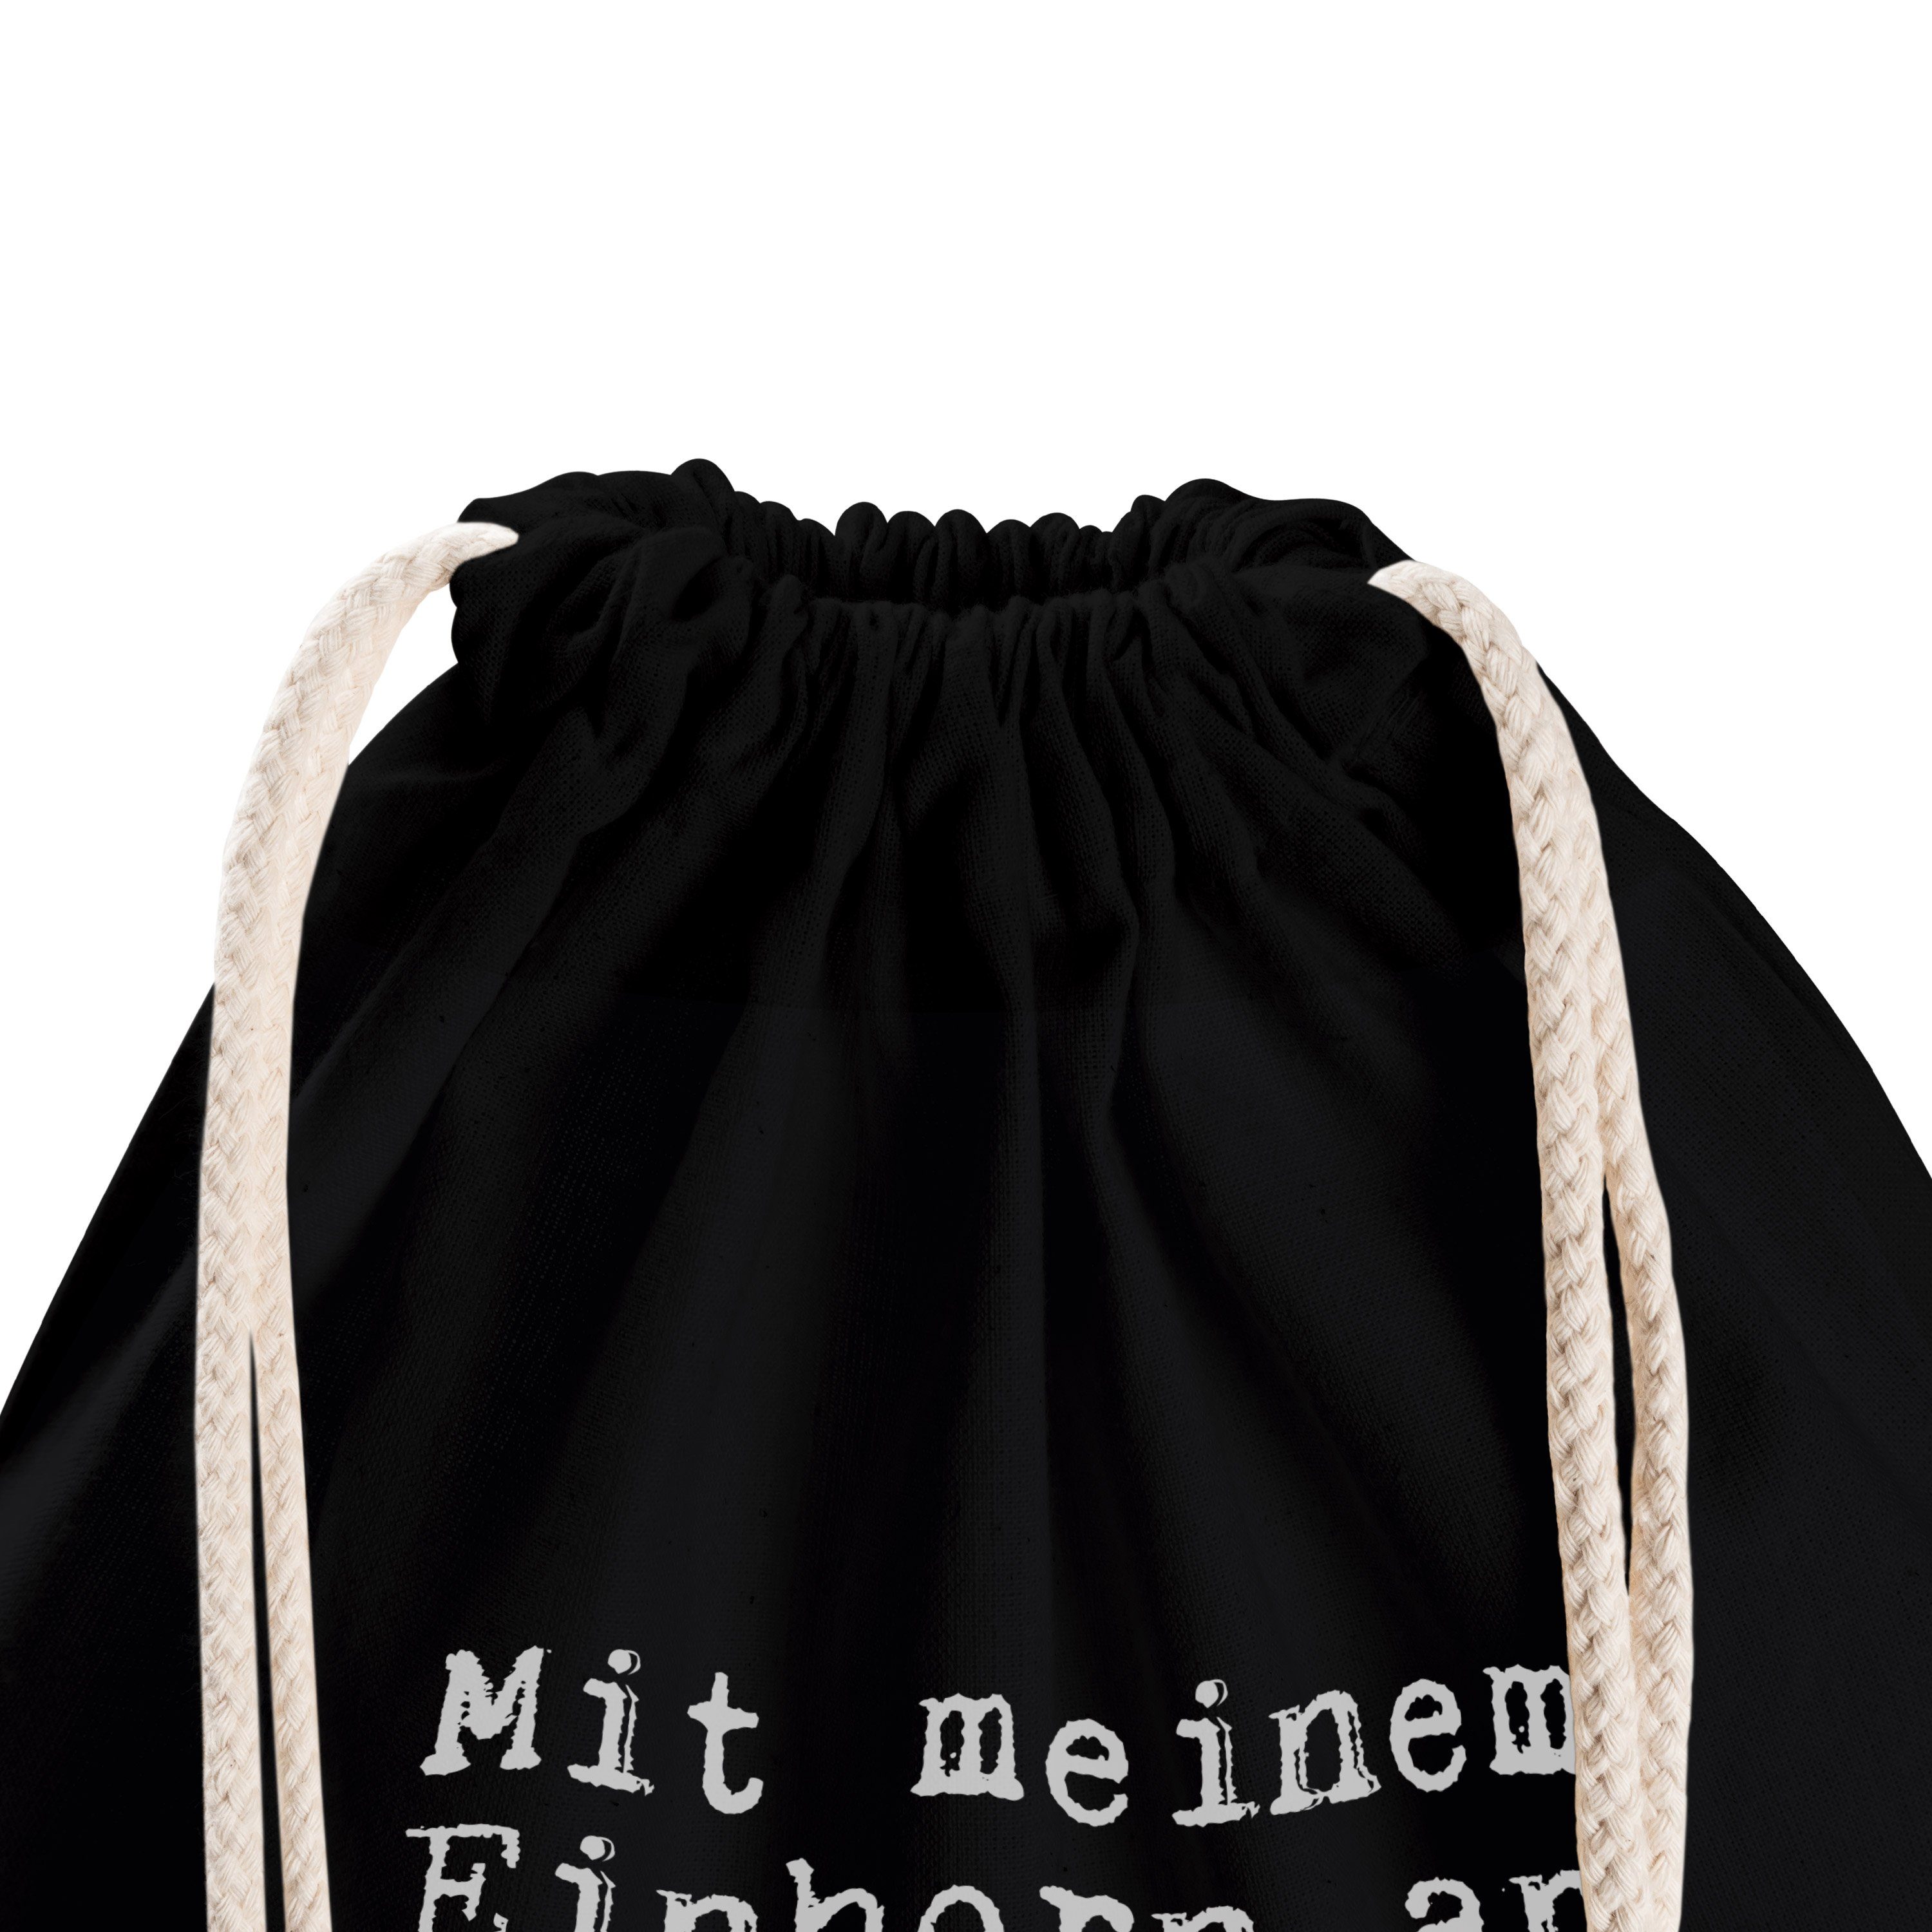 Mr. & Mrs. an... Stoffbeutel - Schwarz Panda Einhorn Geschenk, - Sporttasche (1-tlg) Einhörner, meinem Mit